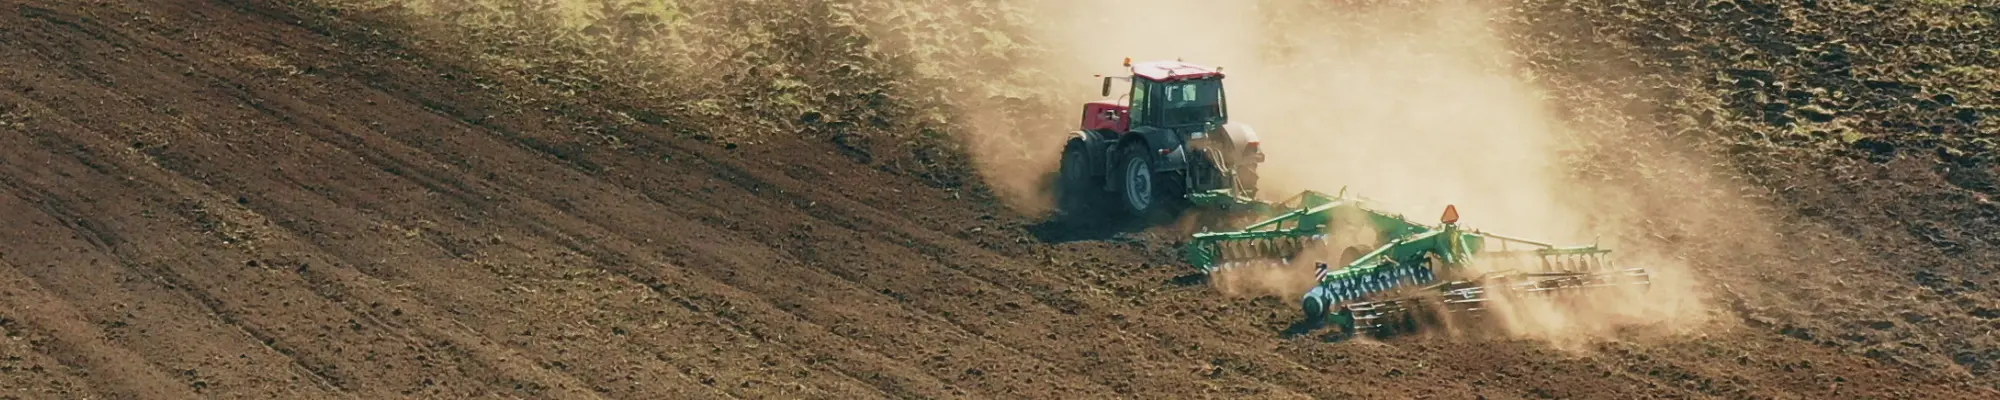 Traktor im Einsatz auf dem Feld – Förderung umweltbewusster Landwirtschaft mit World Climate Farm Tool